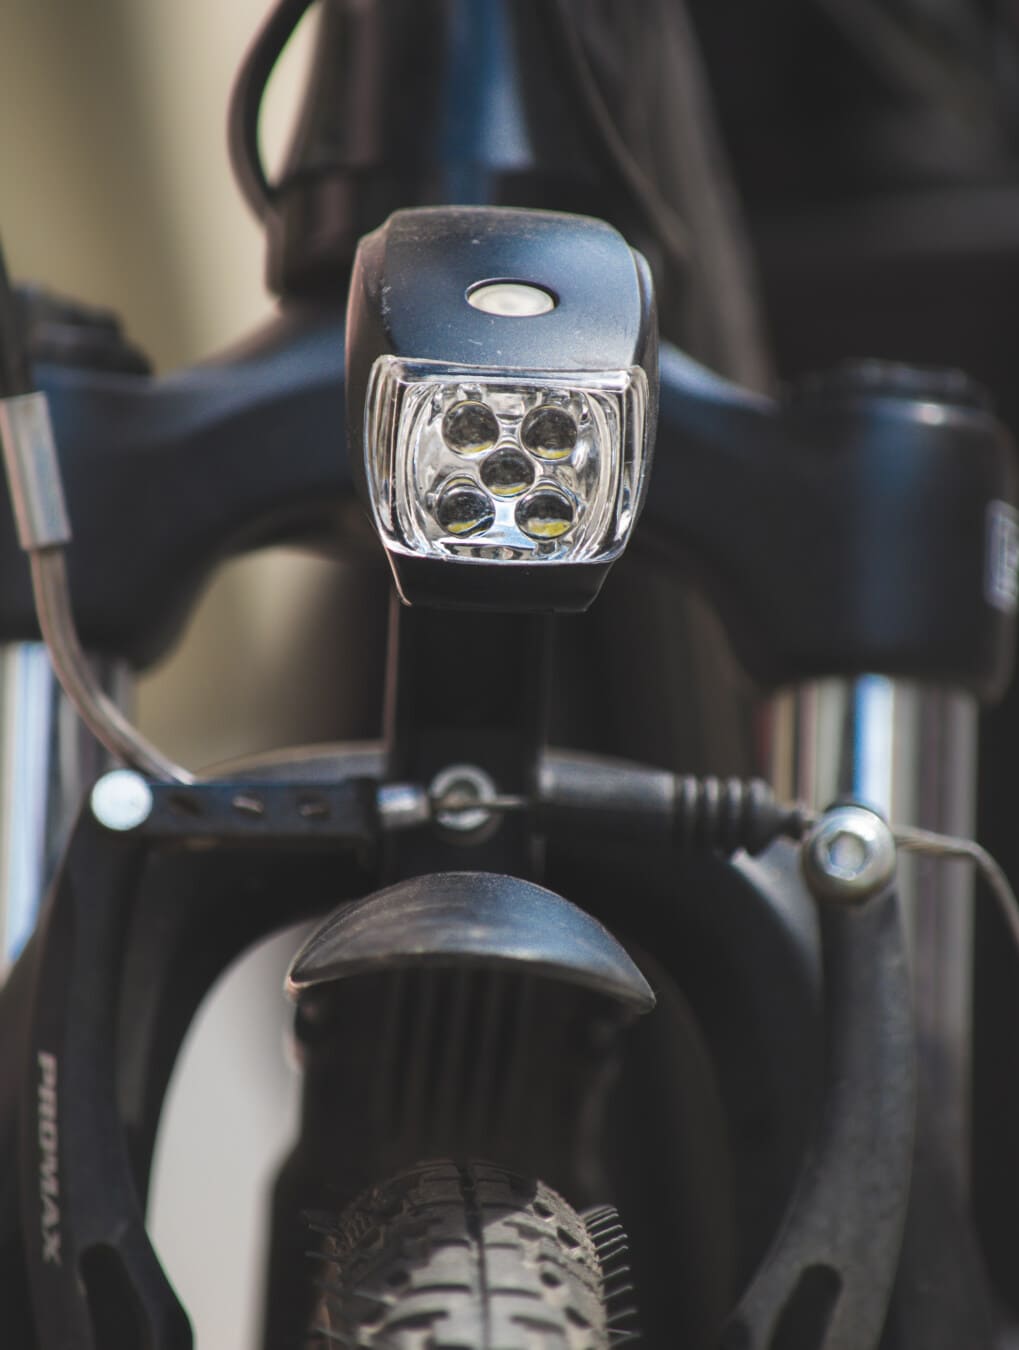 đèn pha, đèn lưởng cực, ánh sáng, chi tiết, xe đạp, ký-đóng, lốp xe, thiết bị, bánh xe, công nghệ